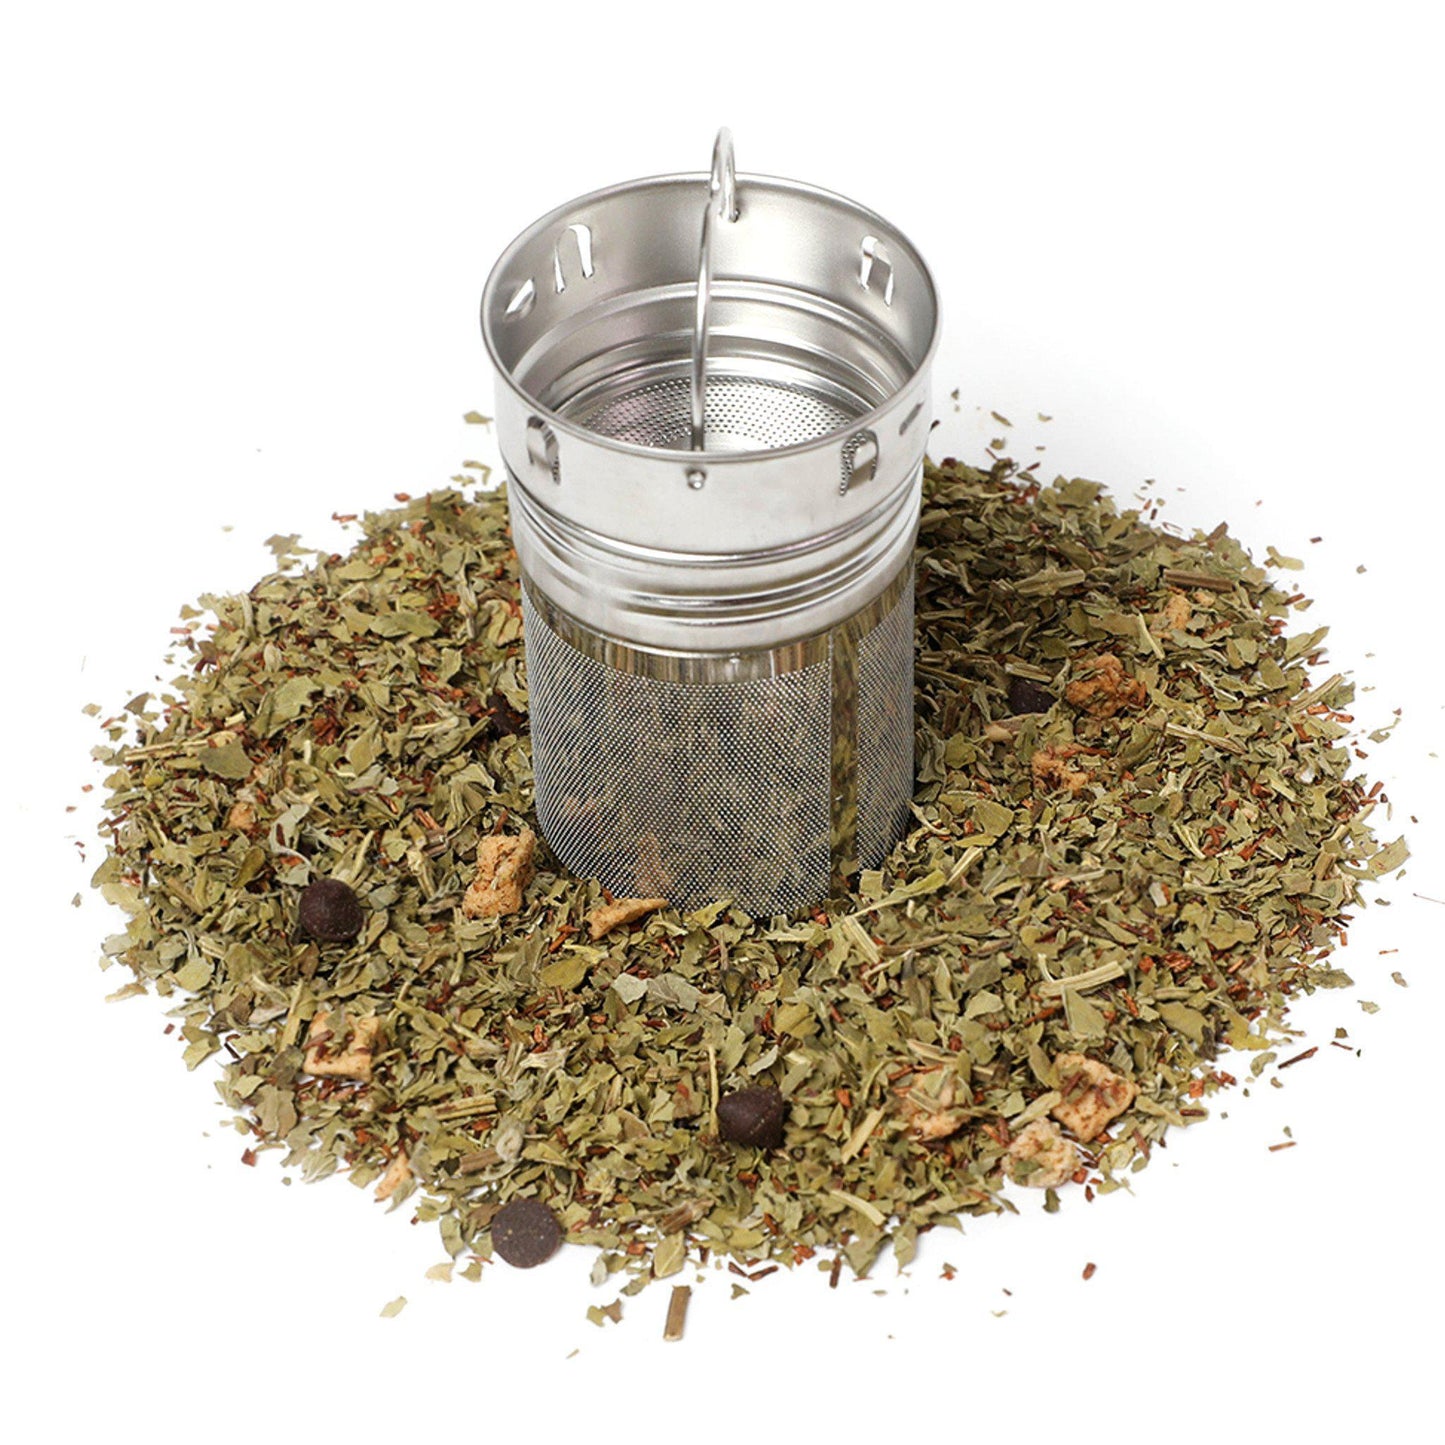 Nightcap Loose Leaf Tea Infusion - Peppermint, Rooibos, Sweet Apples & Chocolate Nibs - mykodu